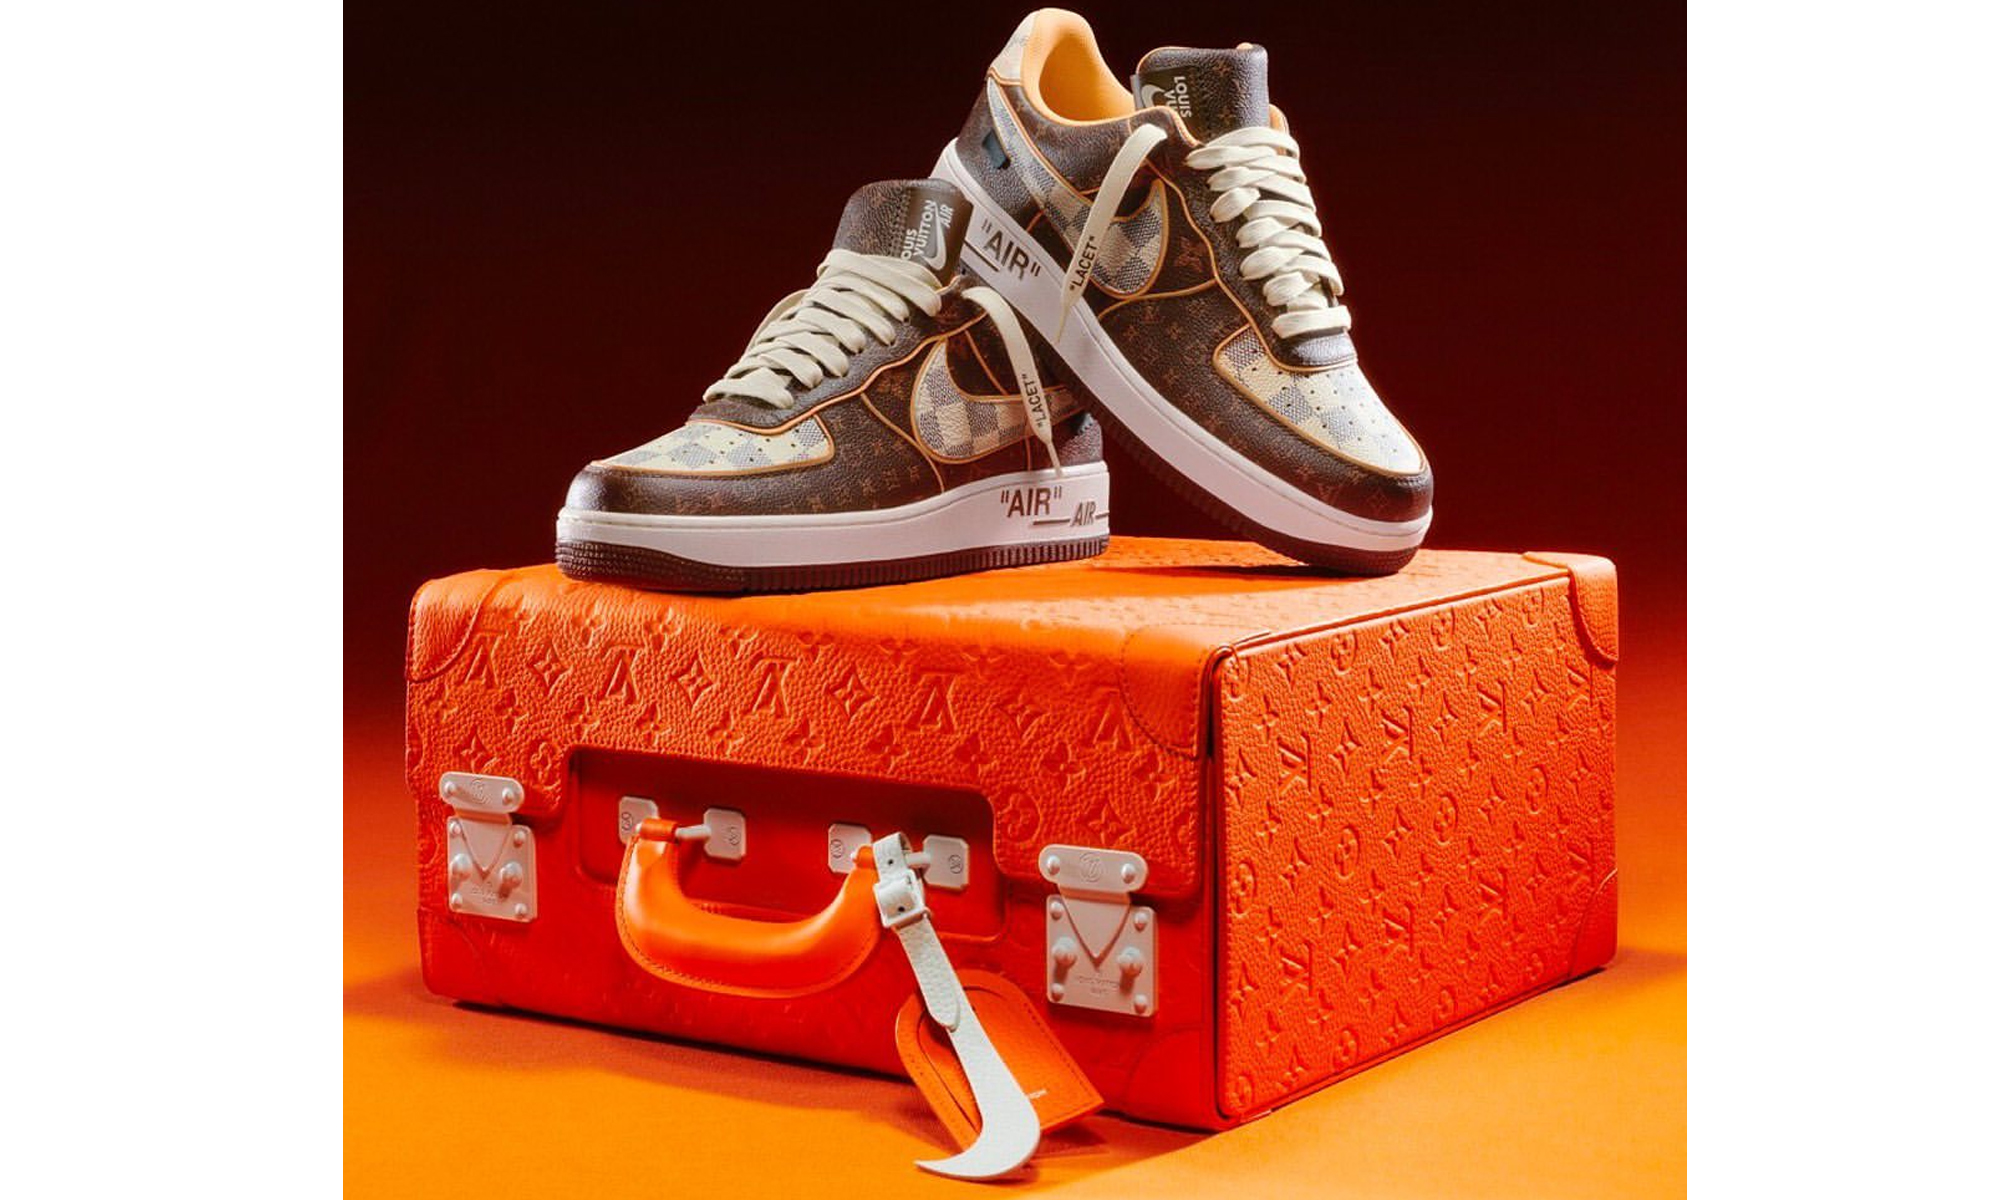 200 双 LOUIS VUITTON x Nike Air Force 1 独家鞋款将于下周在苏富比进行拍卖